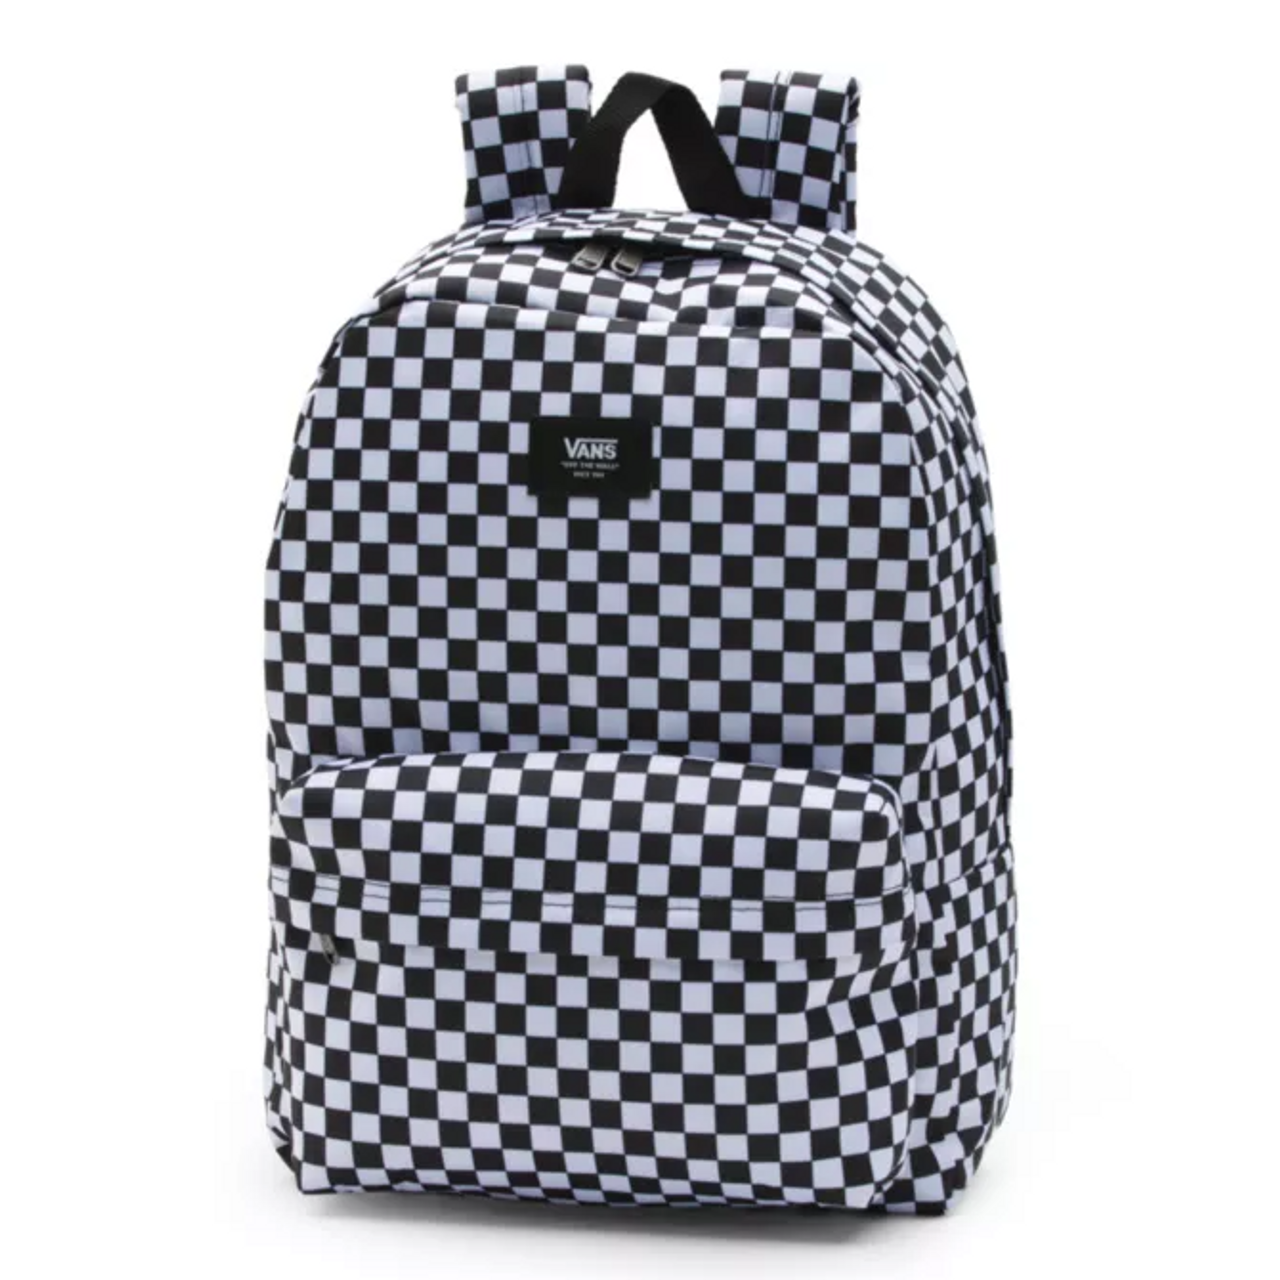 Vans Old Skool Checkerboard Backpack 2021 | Get Boards